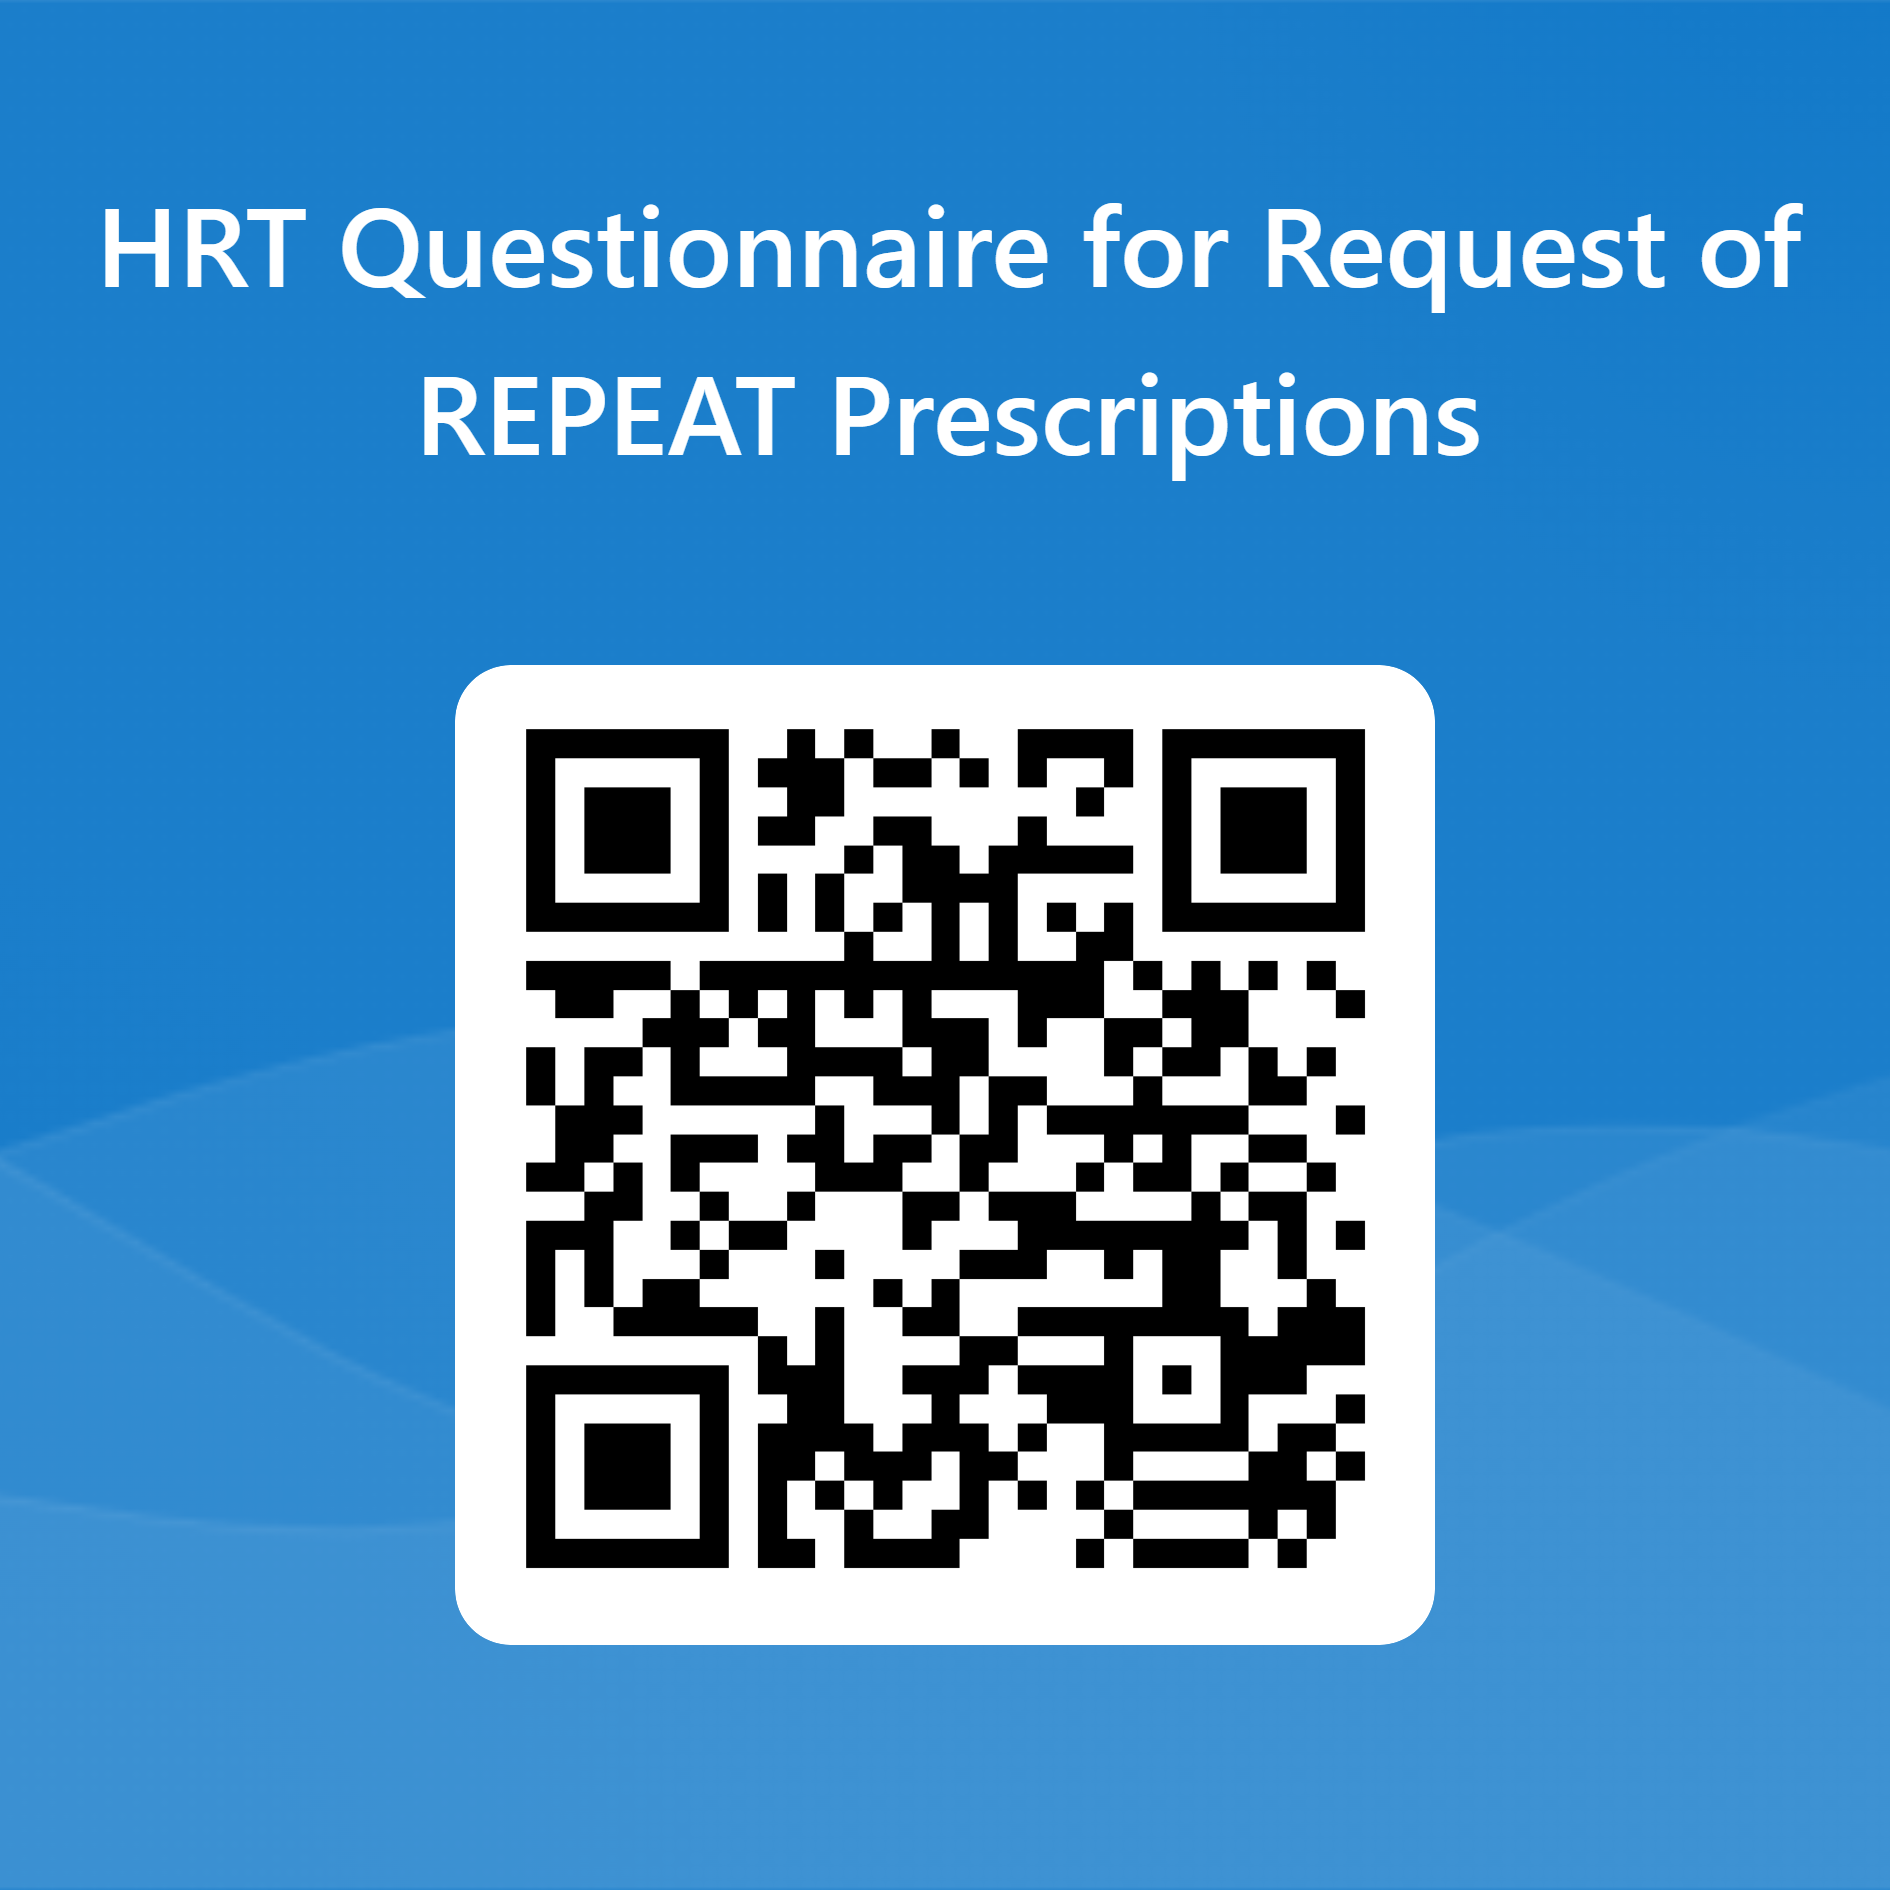 HRT Repeat Prescription Questionnaire